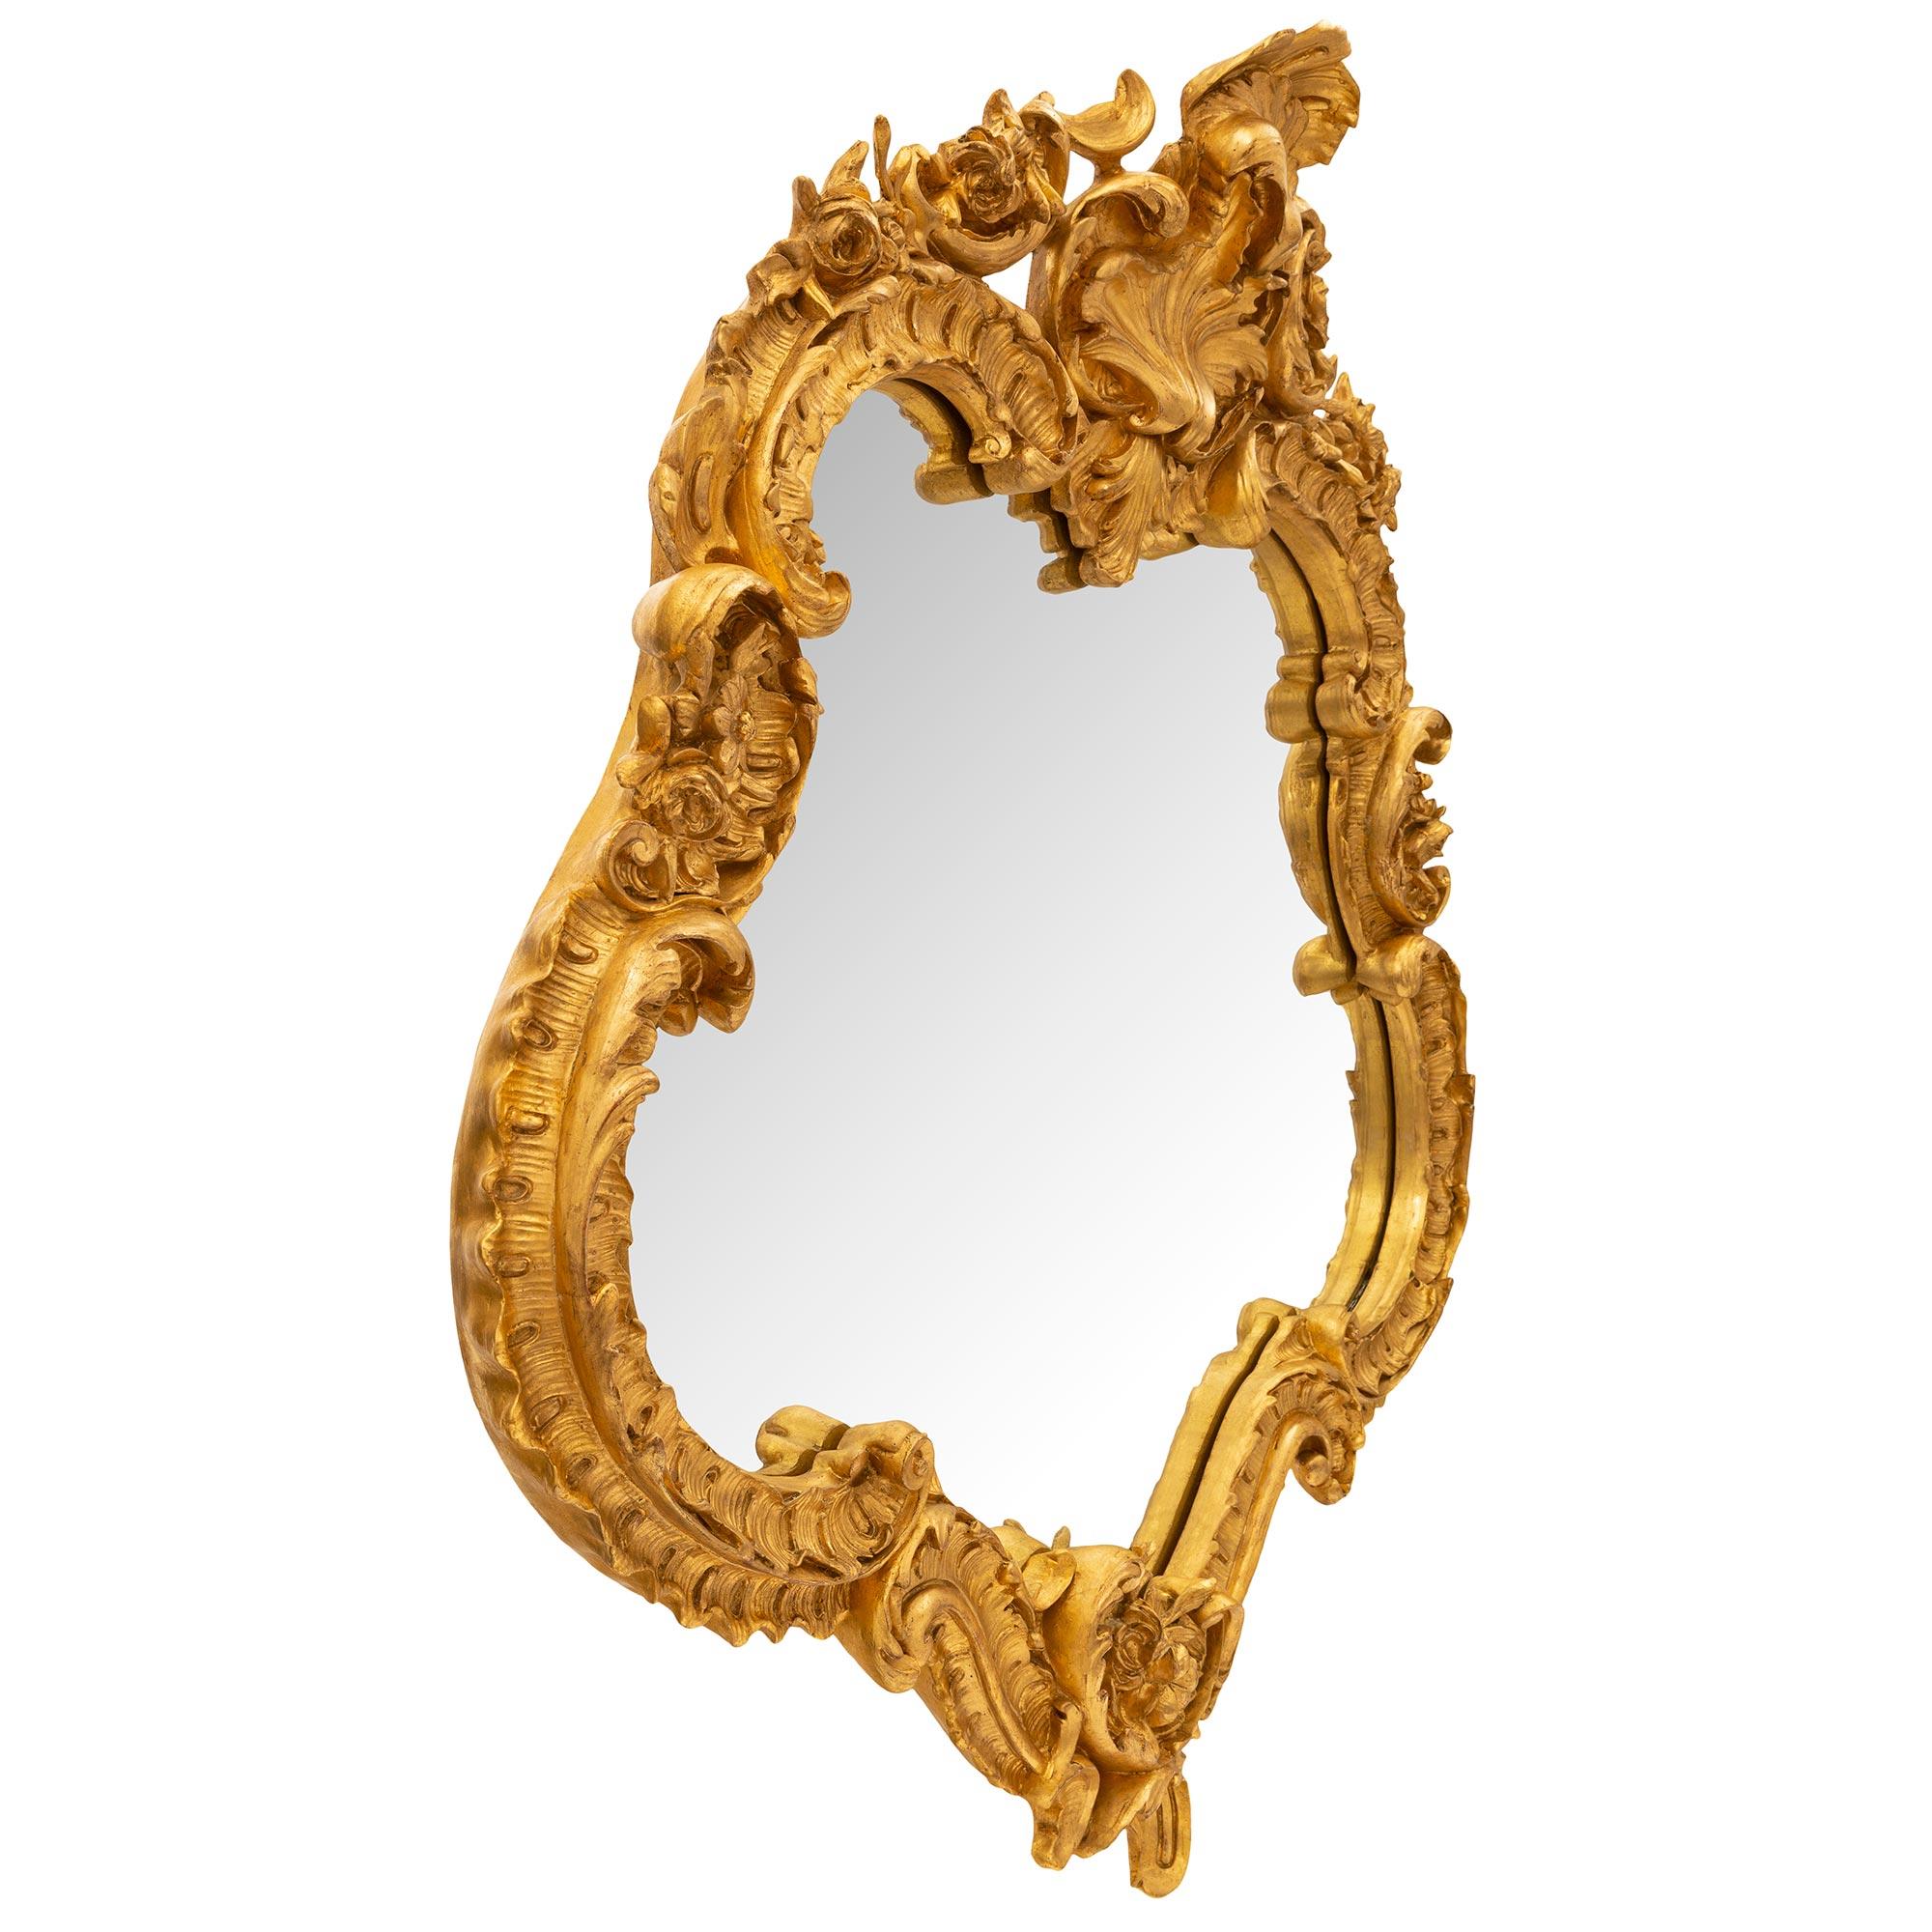 Exceptionnel et très unique miroir français du 19ème siècle en bois doré de style Louis XV. Le miroir conserve sa plaque d'origine dans un superbe cadre en bois doré festonné extrêmement décoratif. Le cadre présente d'exquis mouvements de volutes